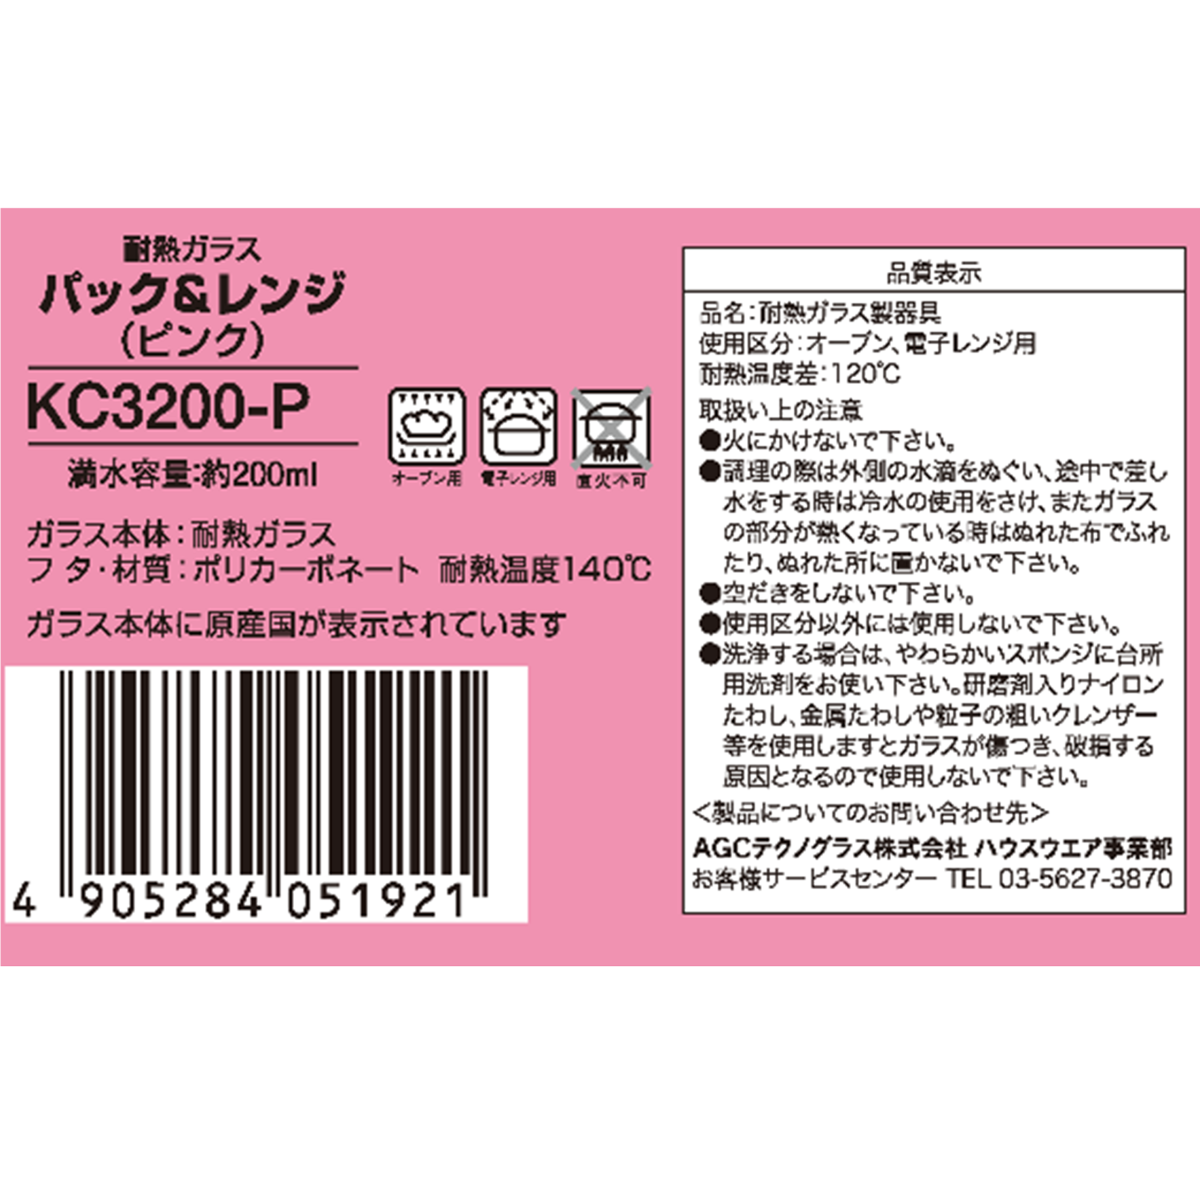 イワキ パック&レンジ 200ml 耐熱ガラス保存容器 ピンク